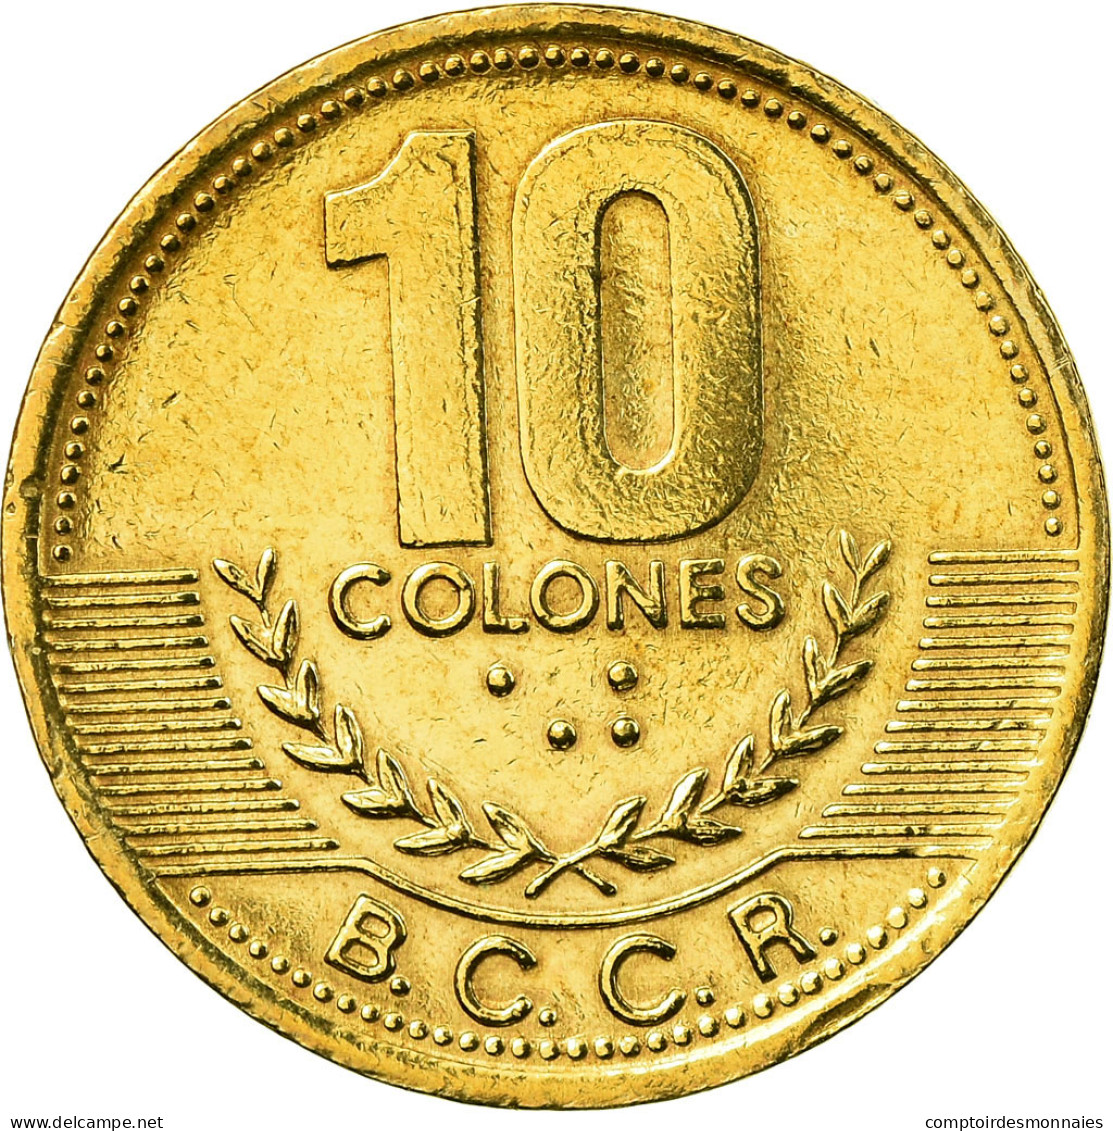 Monnaie, Costa Rica, 10 Colones, 2002, SPL, Laiton, KM:228.2 - Costa Rica